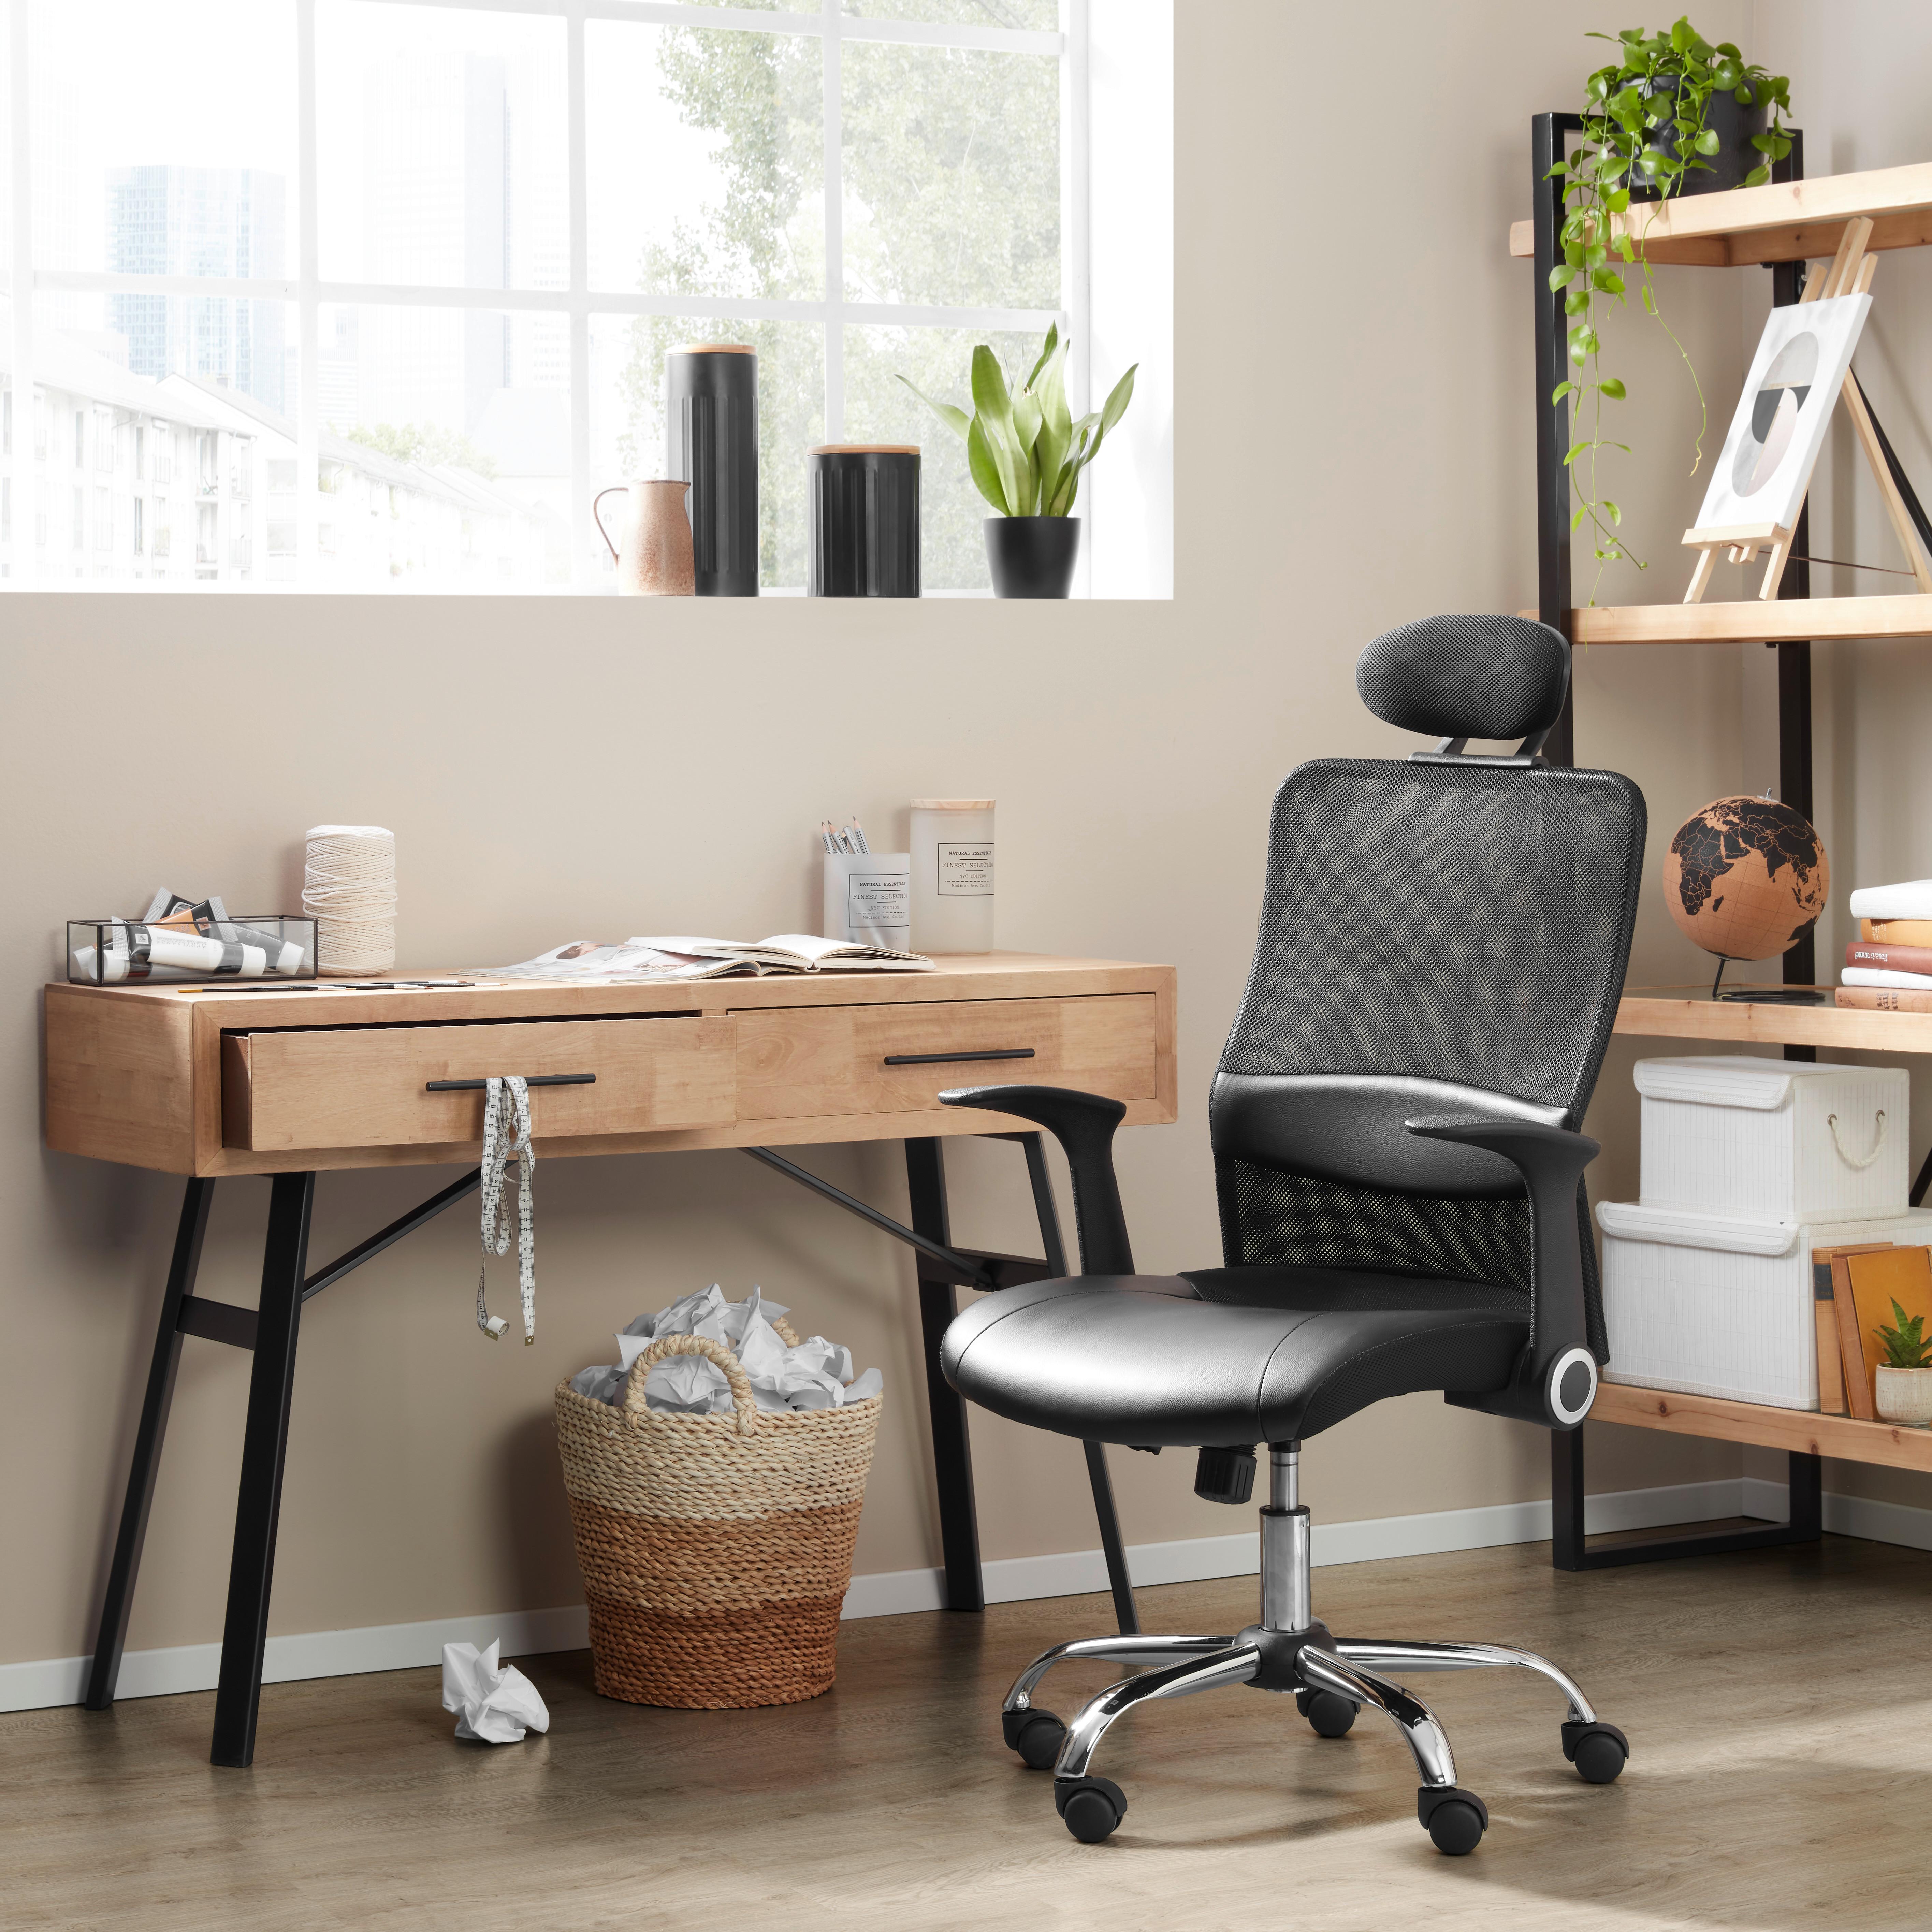 Schreibtisch aus Echtholz - Naturfarben/Grau, LIFESTYLE, Holz/Holzwerkstoff (120/78/40cm) - Premium Living